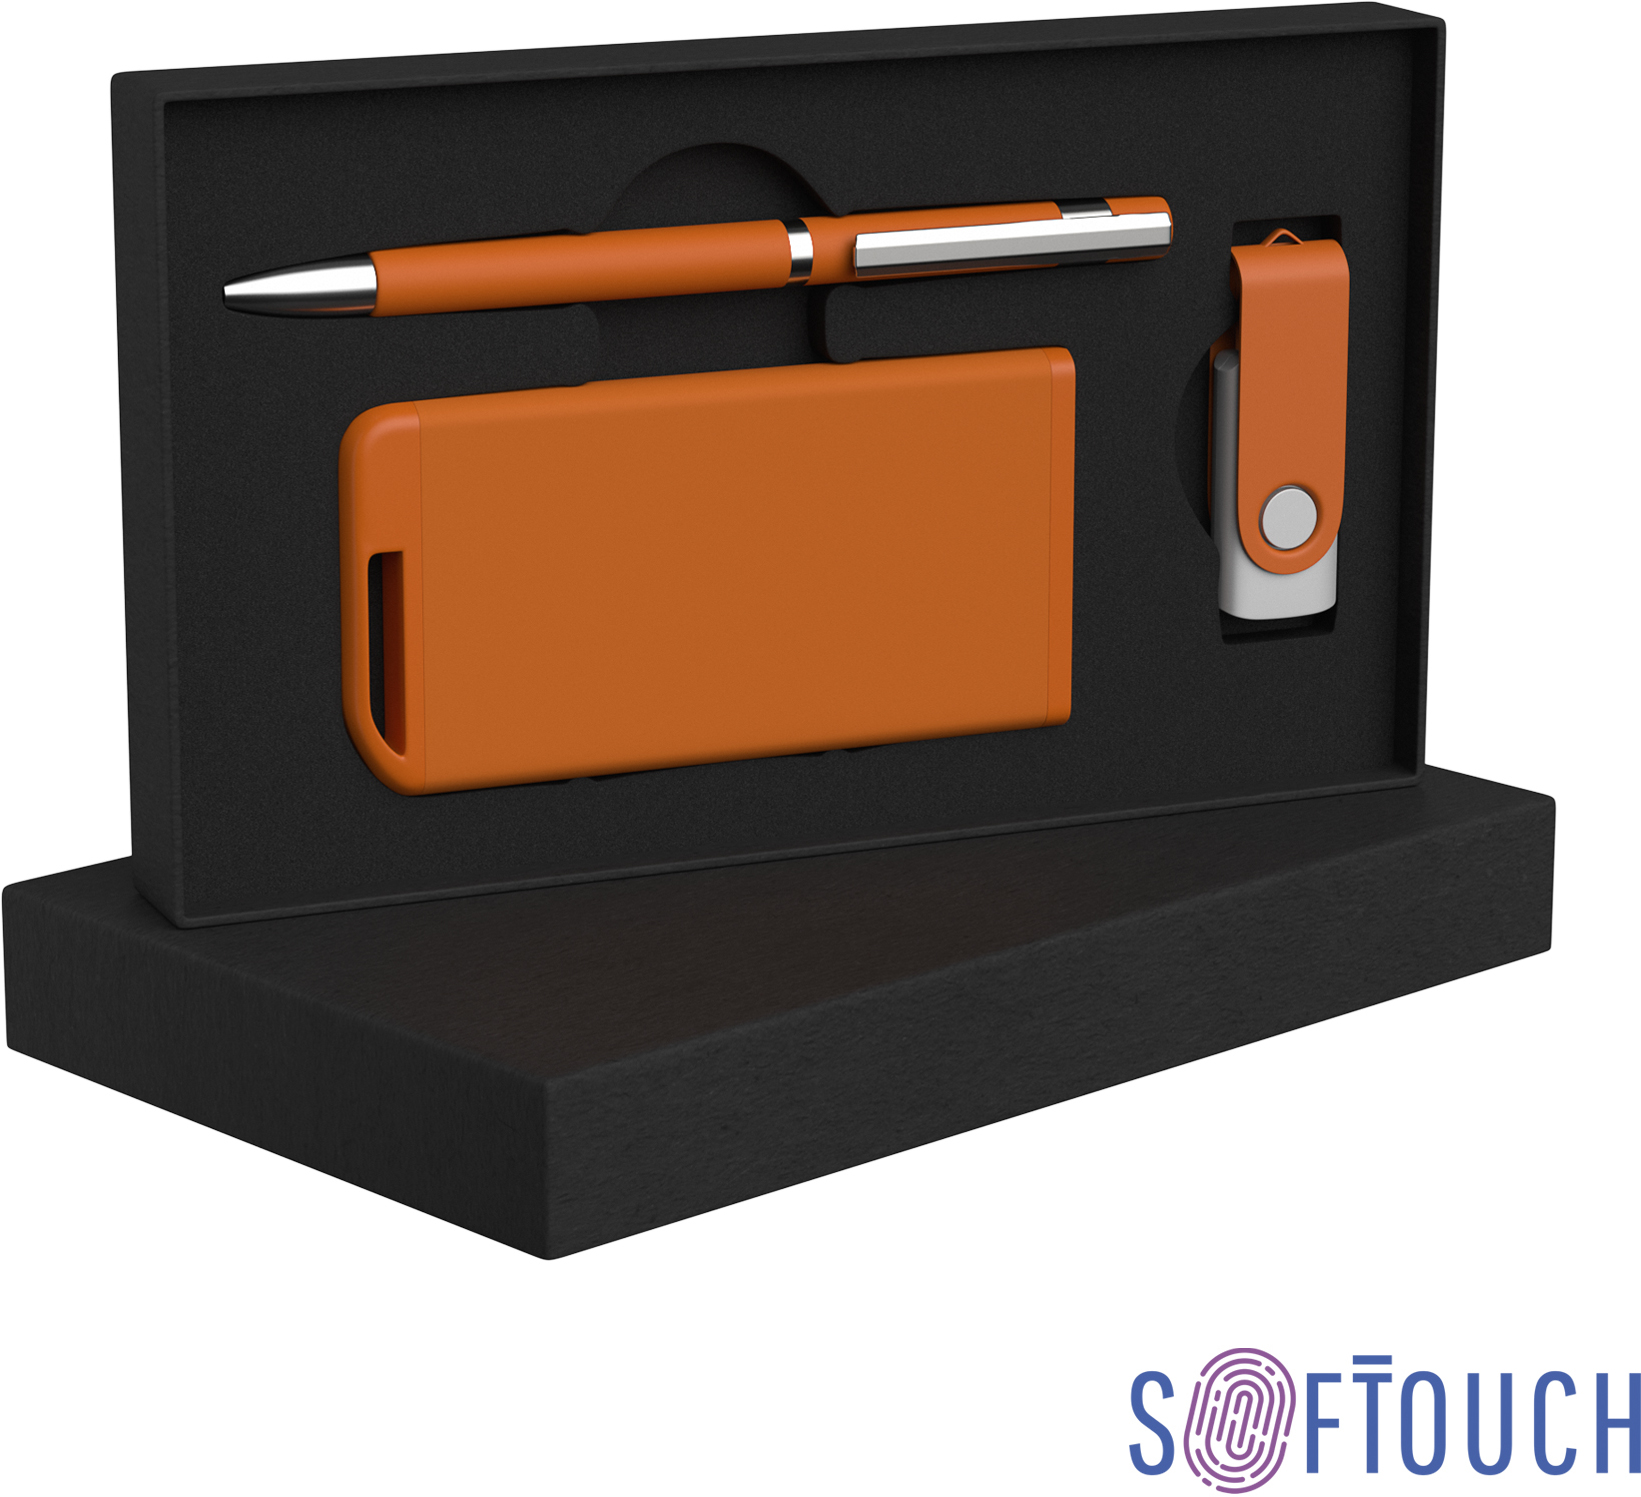 Артикул: E6887-10S/8Gb — Набор ручка + флеш-карта 8Гб + зарядное устройство 4000 mAh soft touch